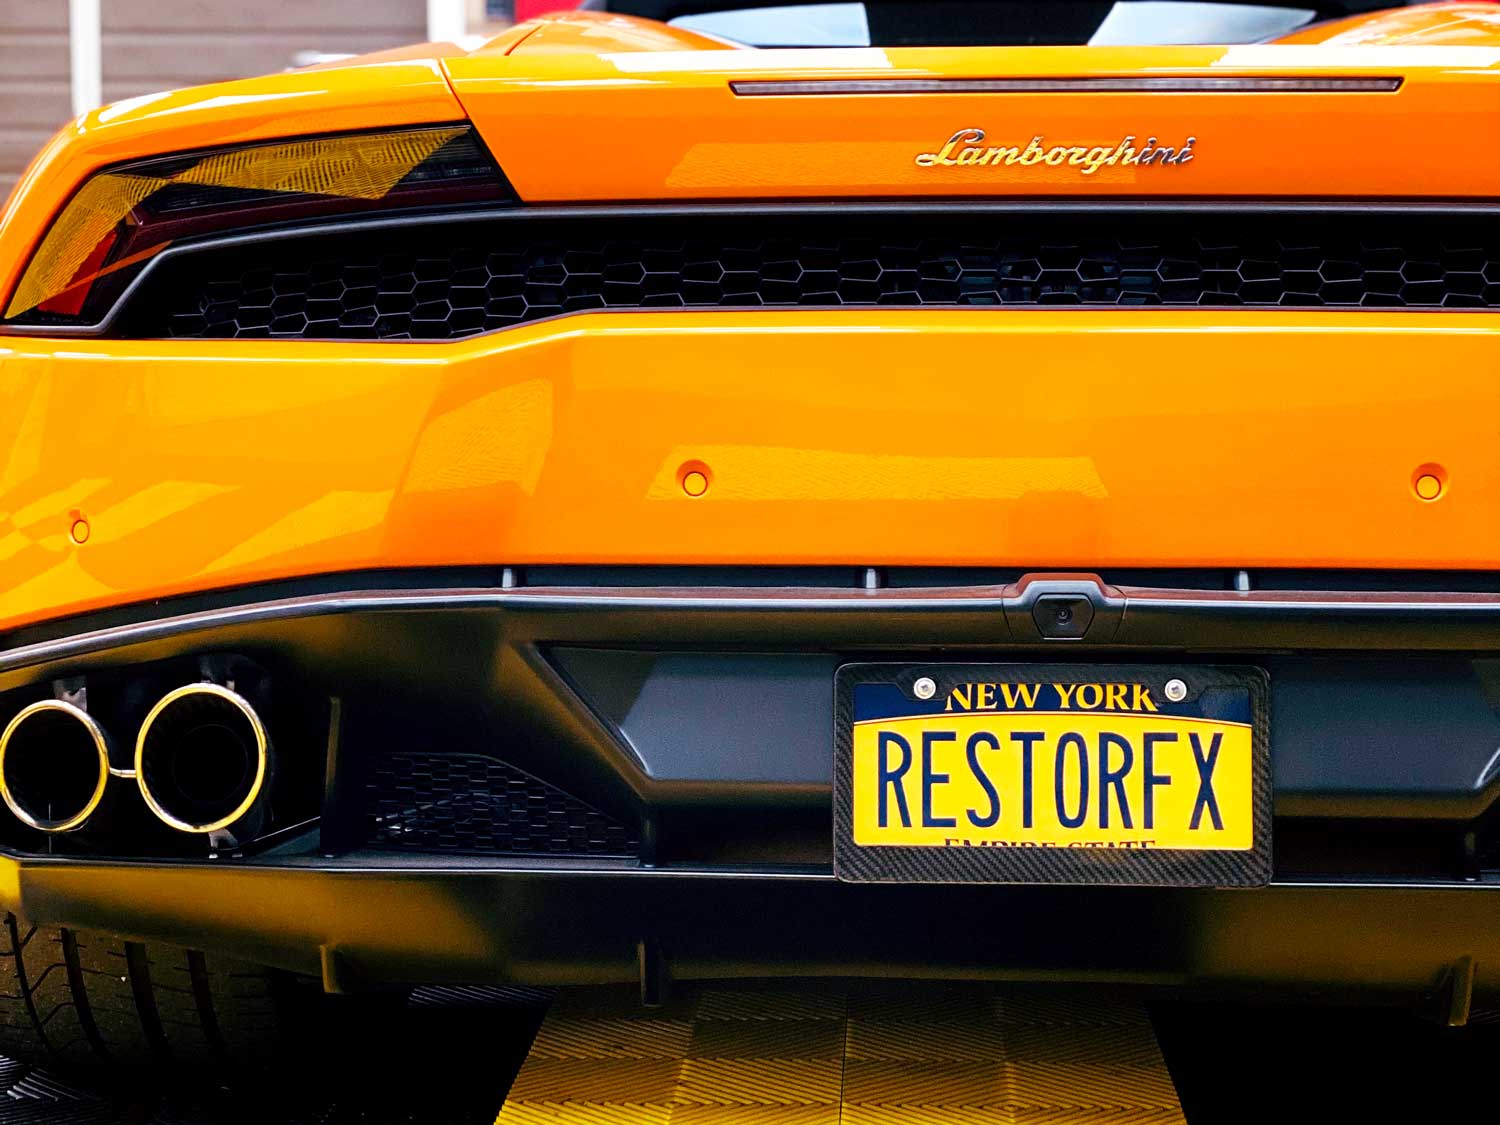 Back of glossy-finished orange Lamborghini at RestorFX Long Island shop area with custom NY plate